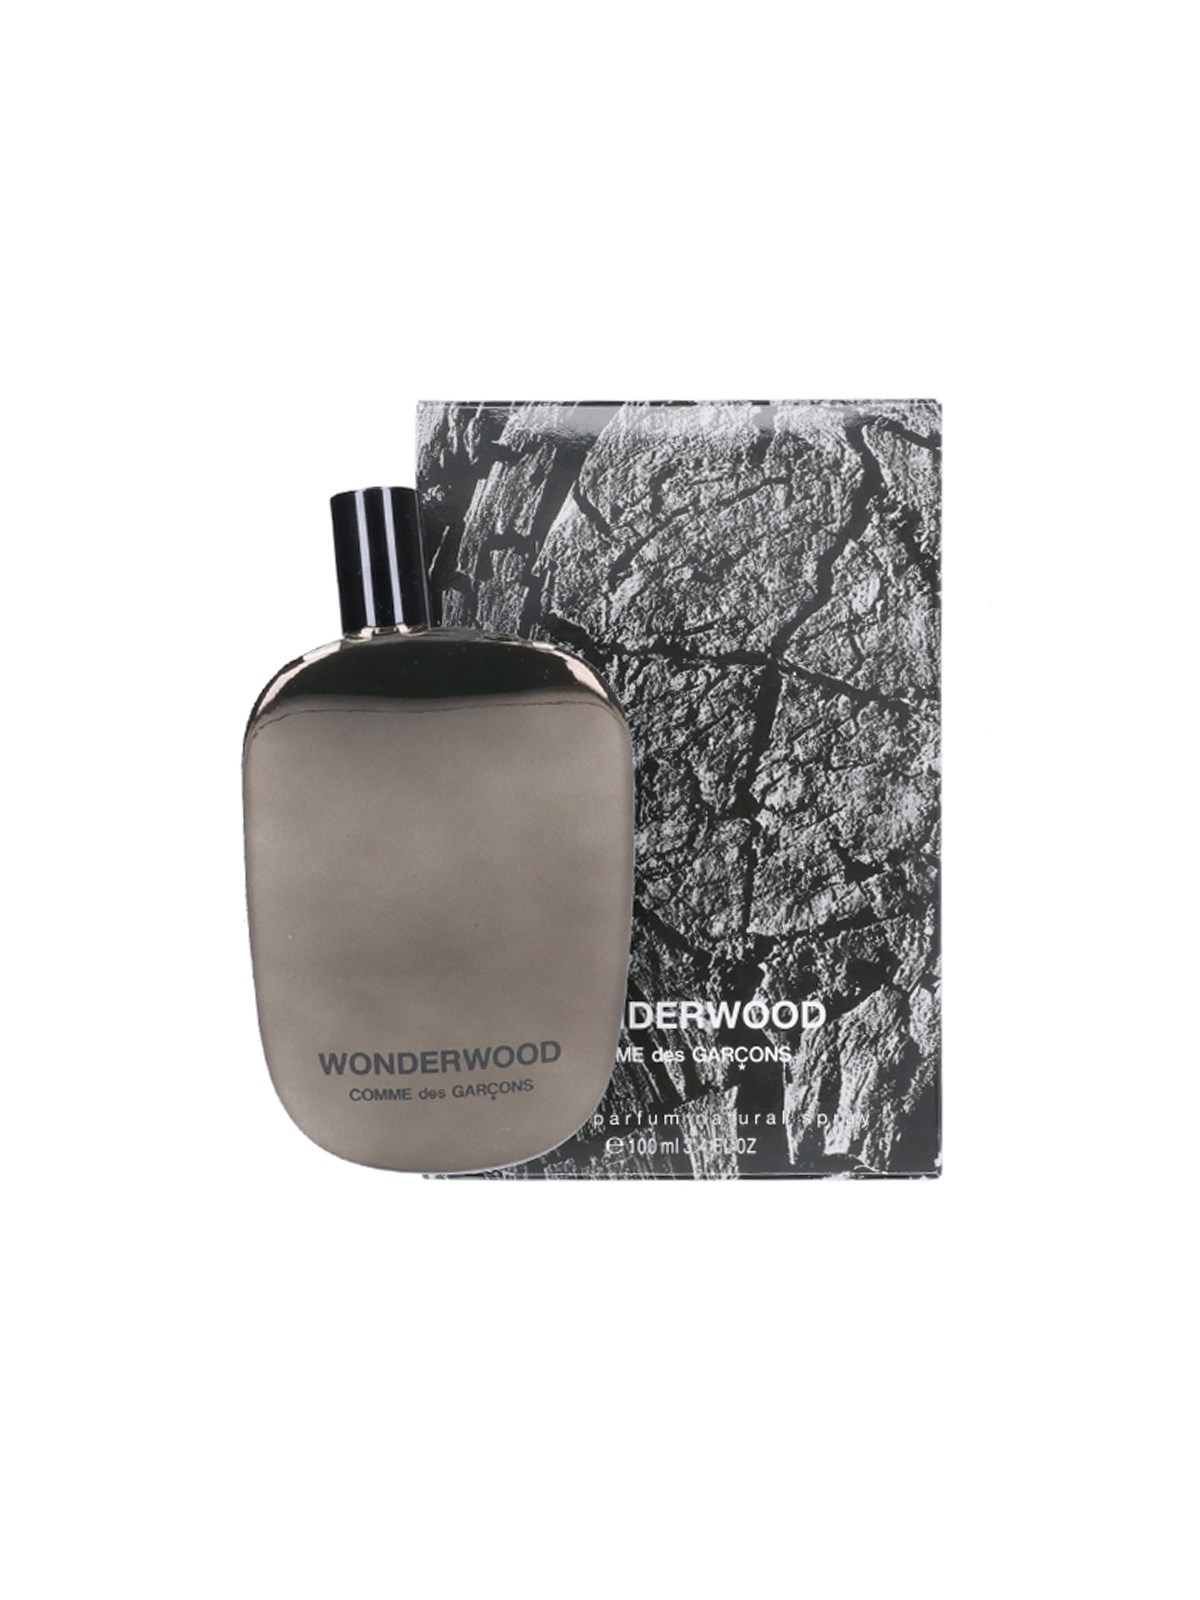 Comme des garcons parfums 'wonderwood' parfum available on SUGAR